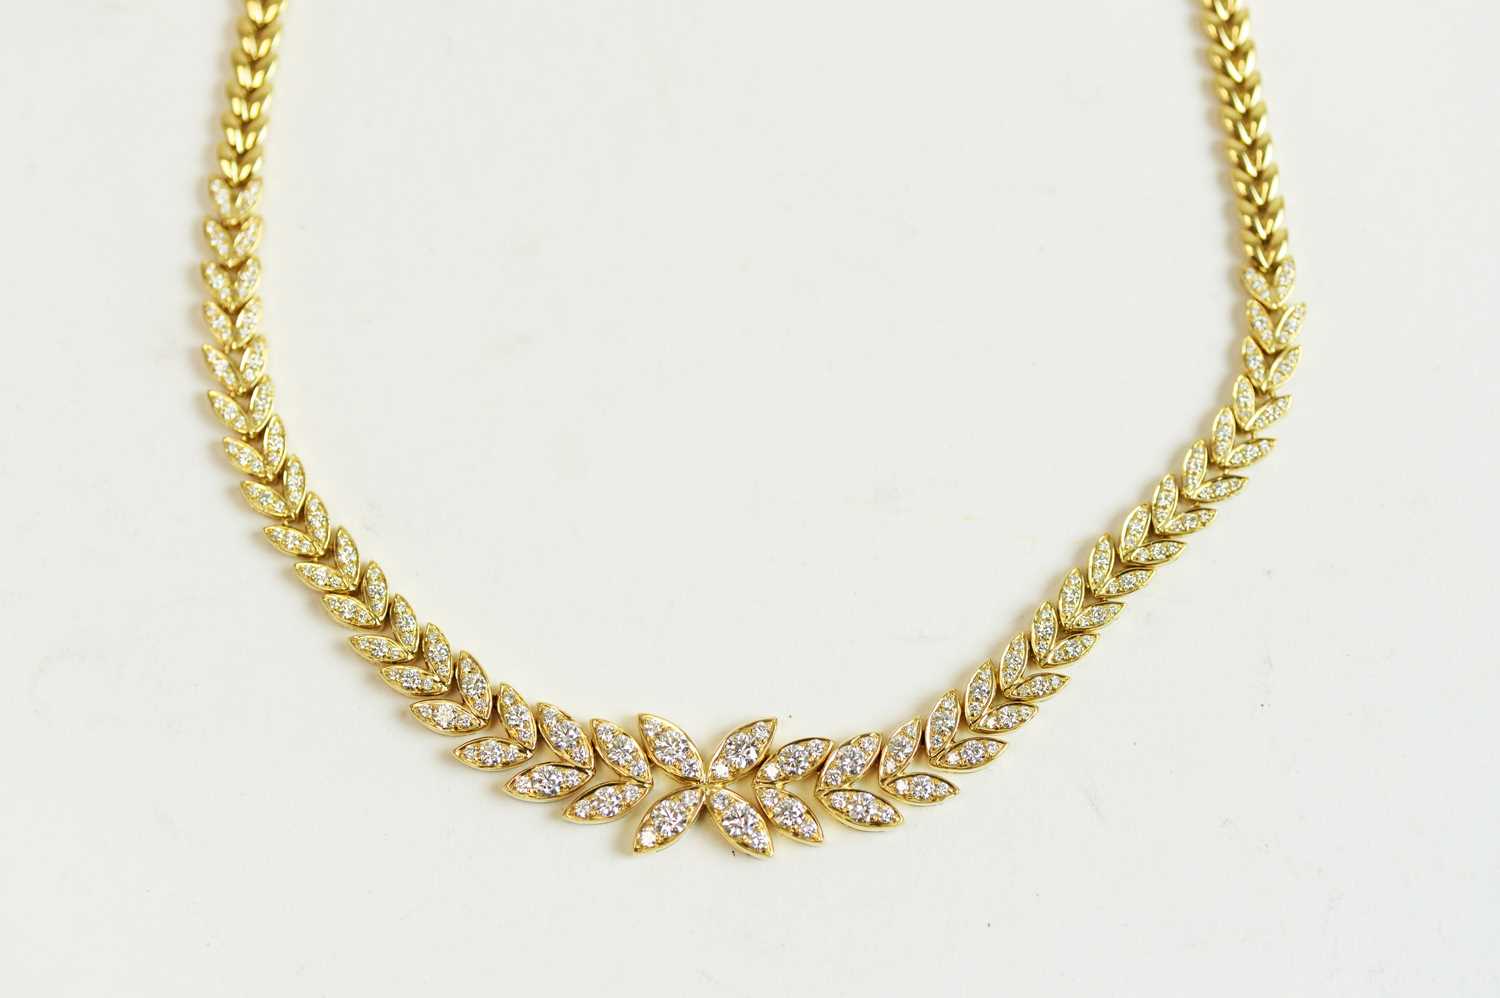 56 - Diamond leaf pattern necklace